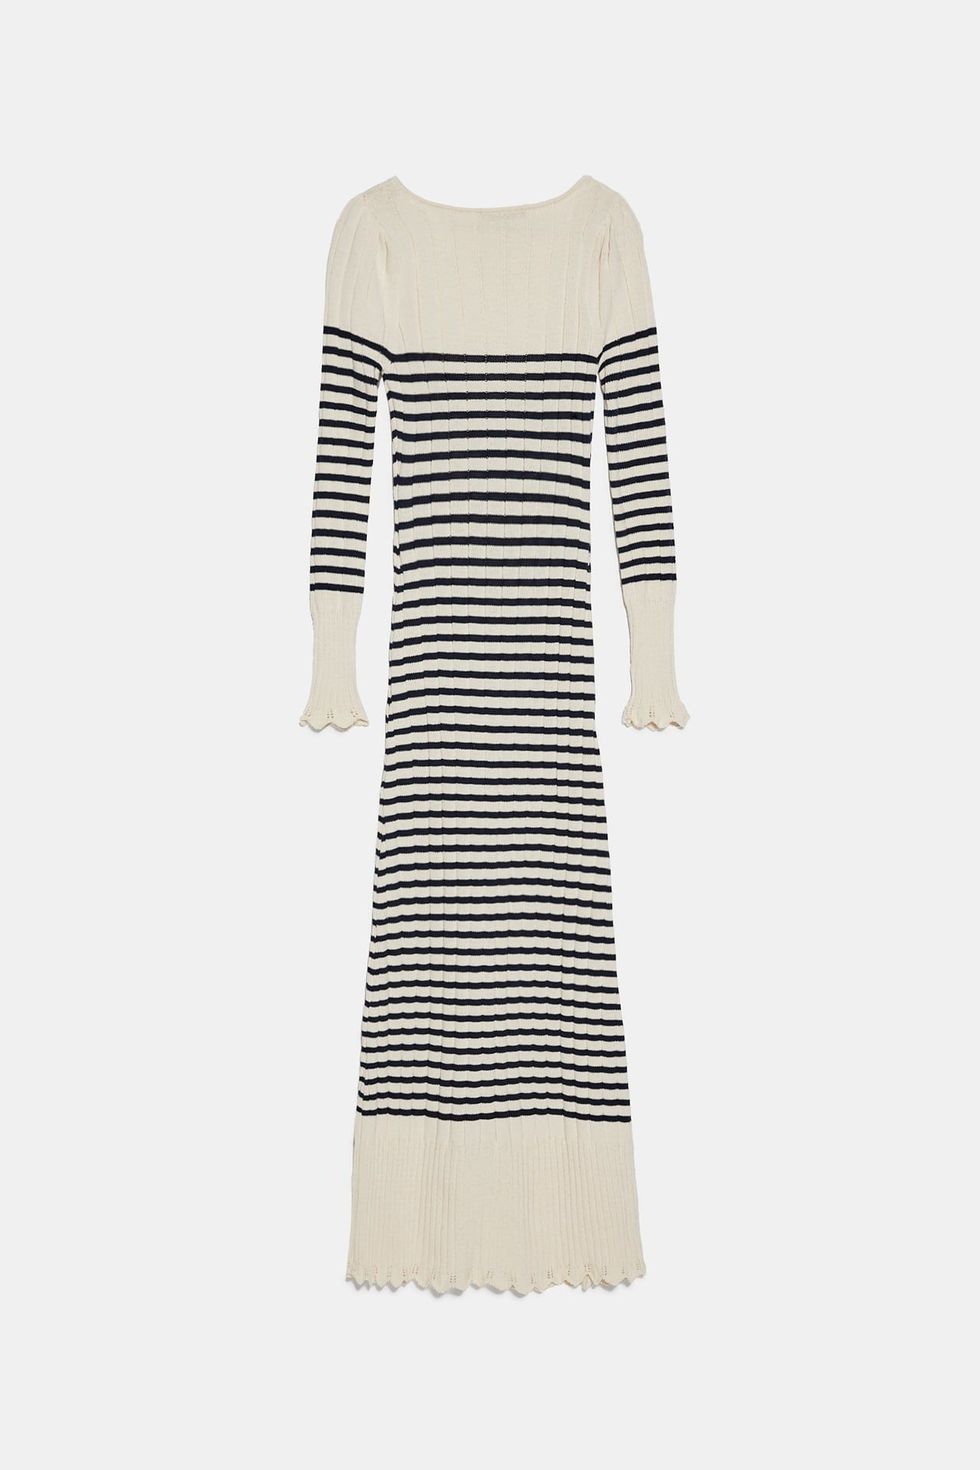 Zara Striped Knit Dress